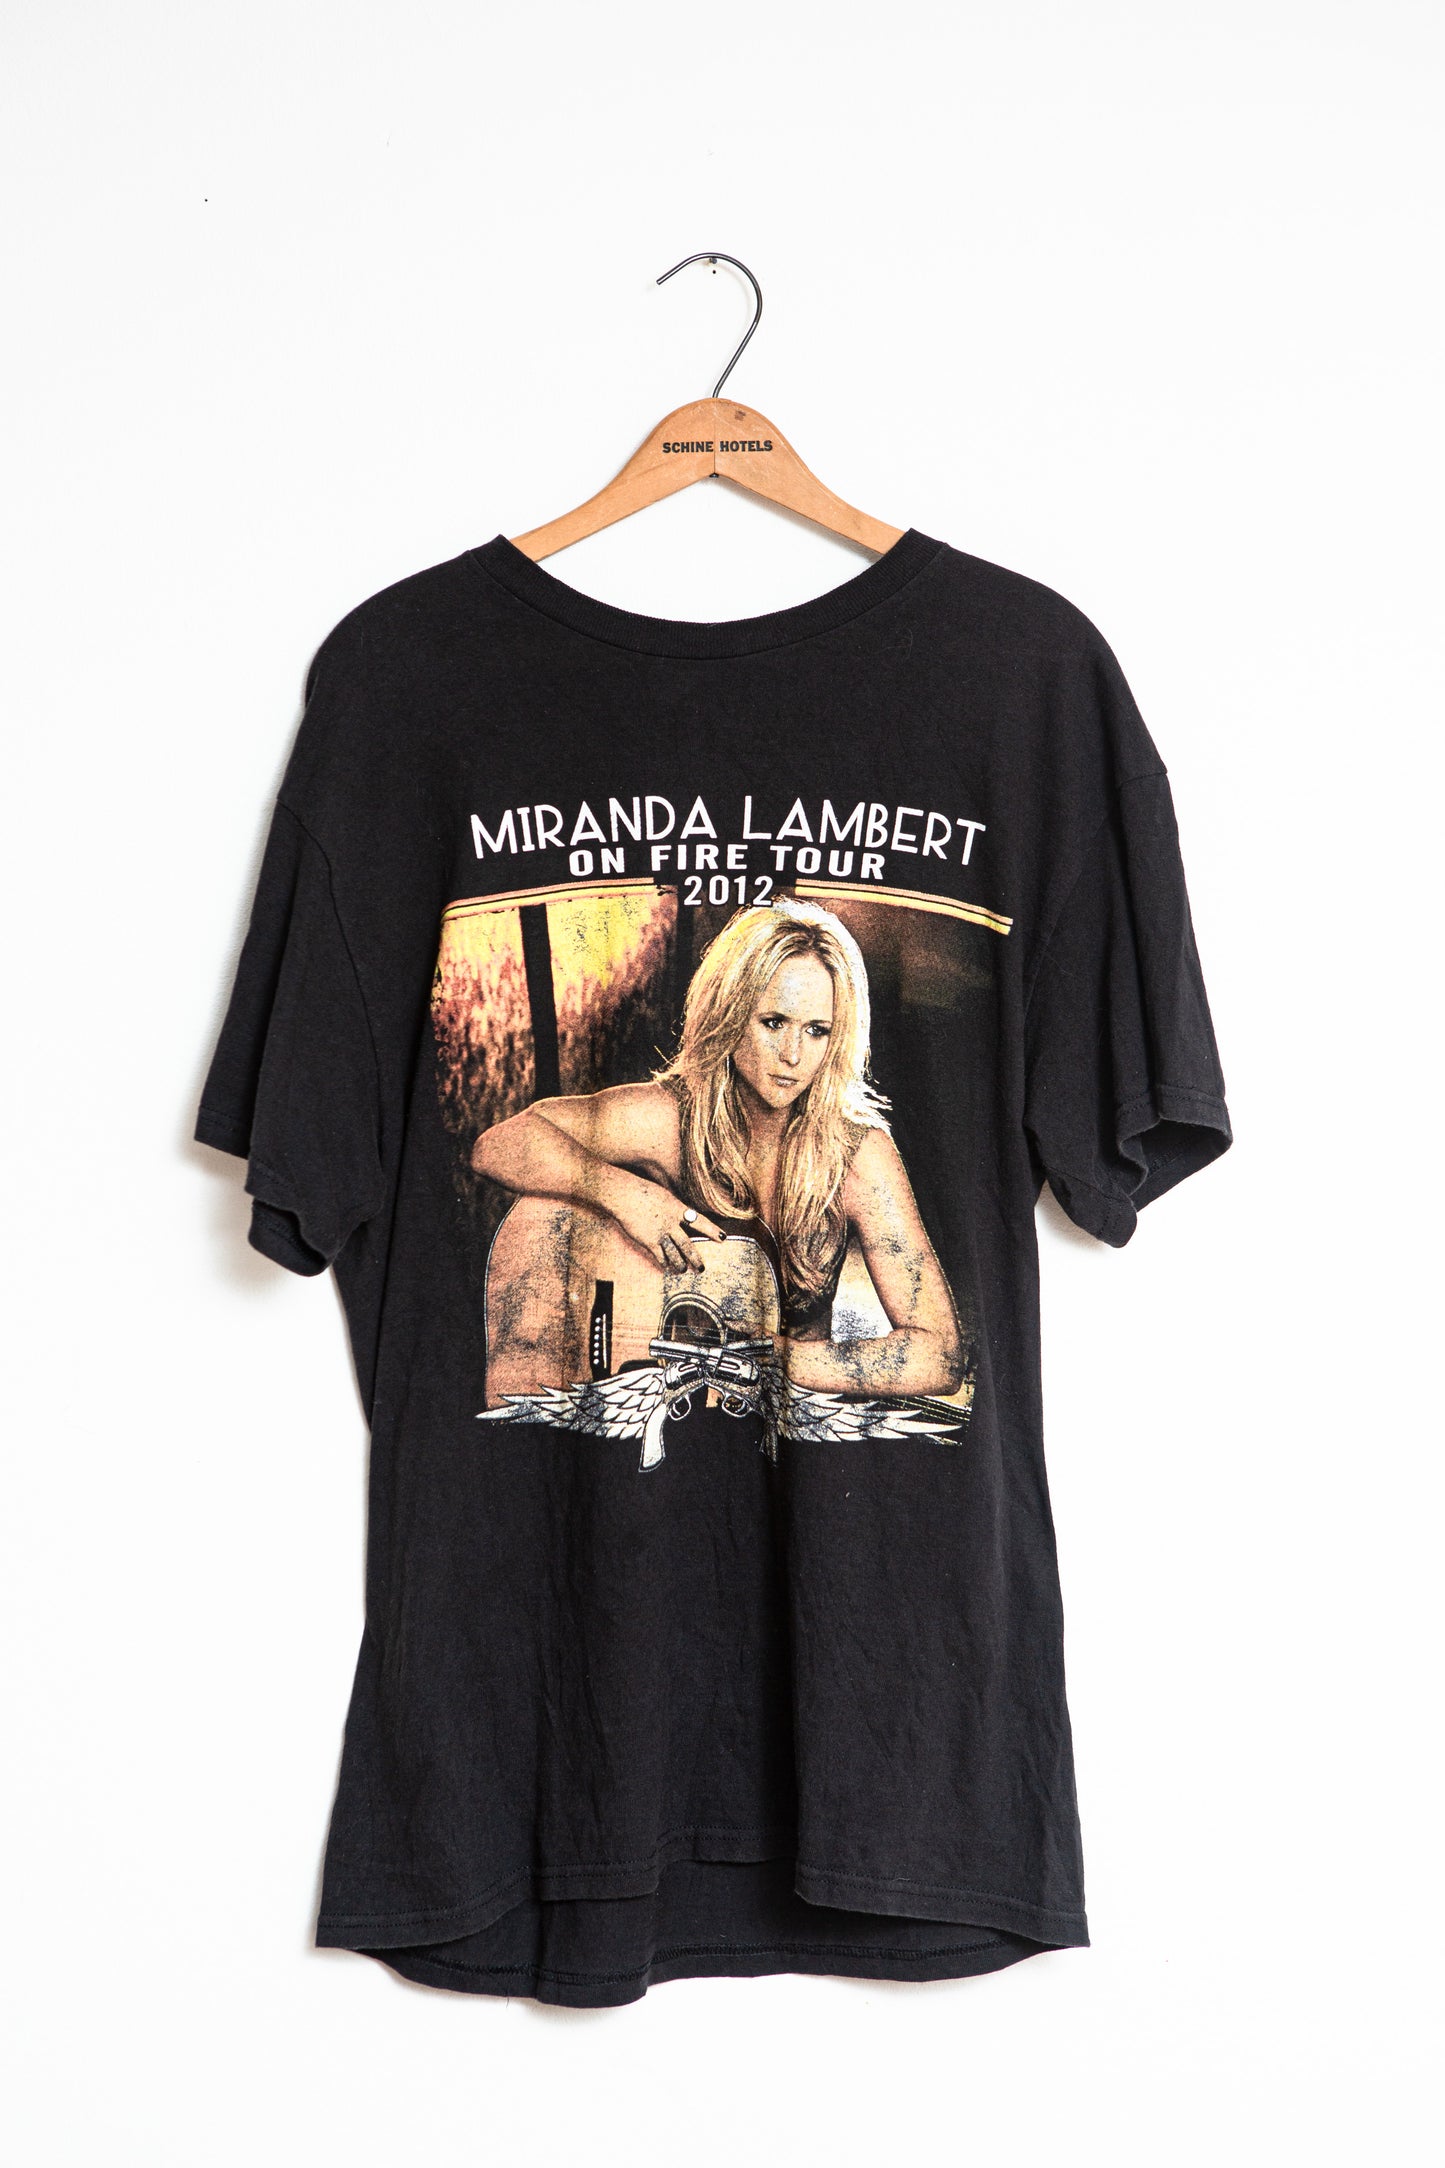 2012 Miranda Lambert On Fire Tour T-shirt